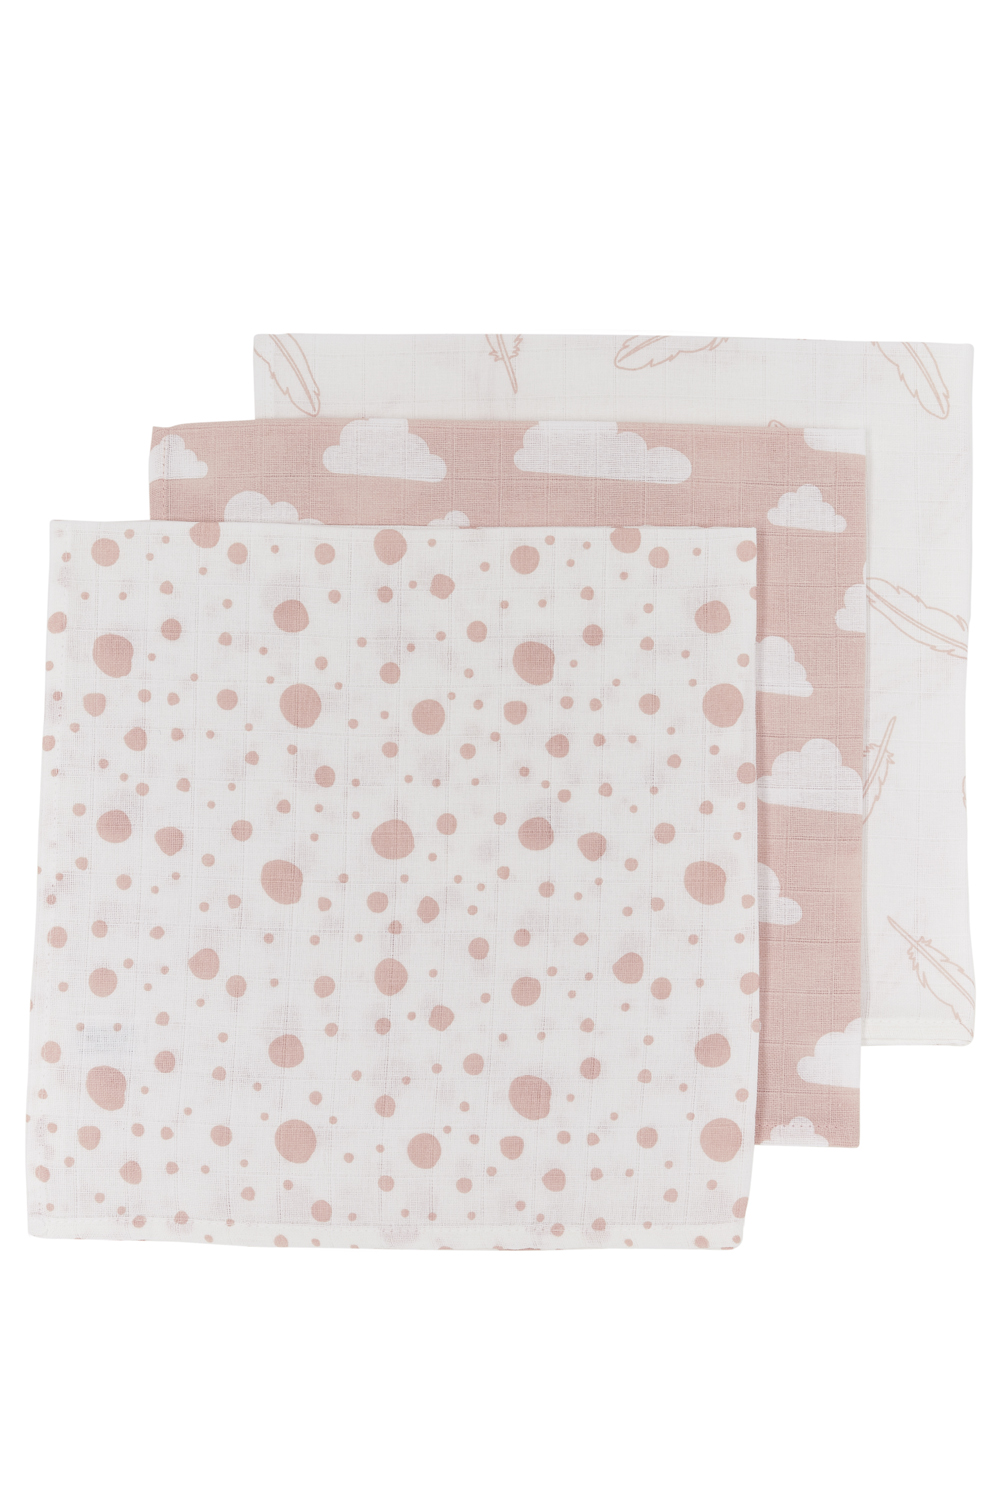 Monddoekjes 3-pack hydrofiel Clouds/Dots/Feathers - pink - 30x30cm